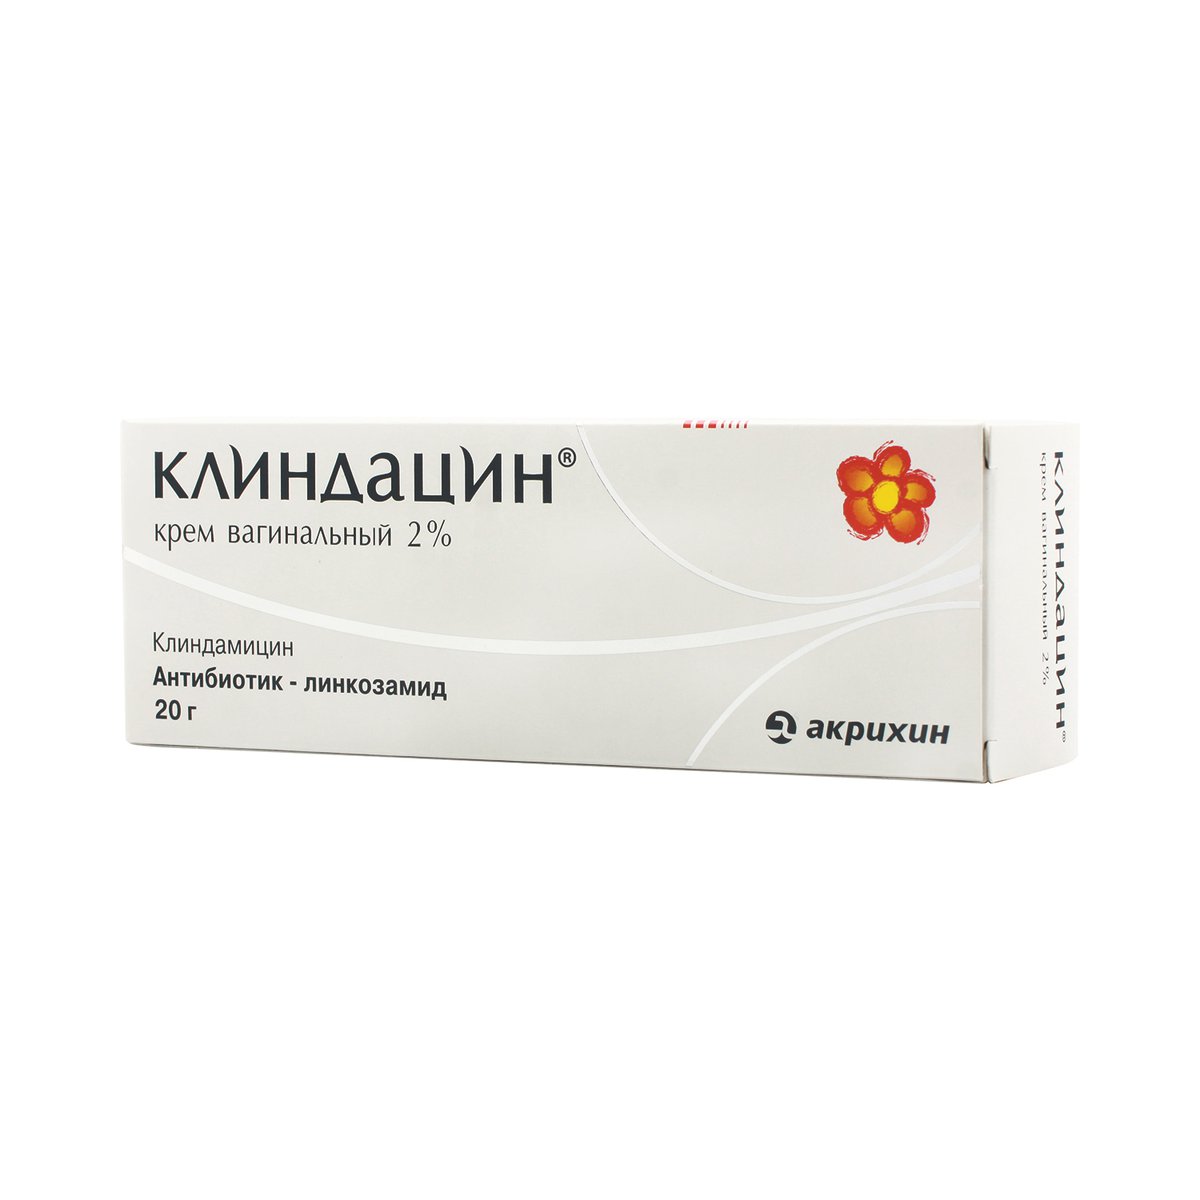 Клиндацин (крем, 20 г, 2 %) - цена,  онлайн , описание .